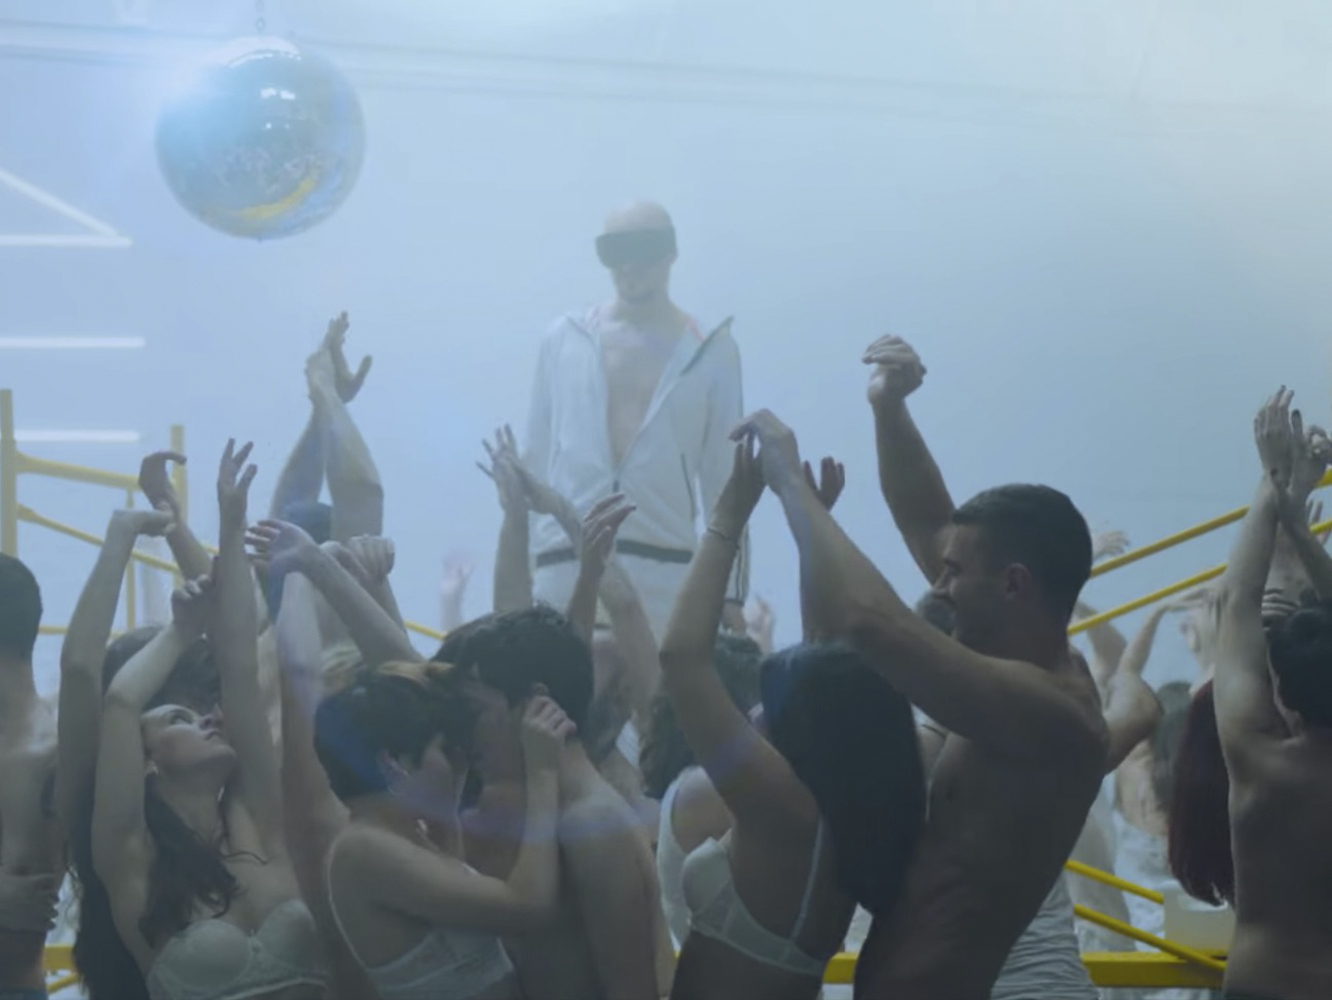  La Casa Azul se inyecta ‘Ataraxia’ con un vídeo oficial bastante erótico-festivo